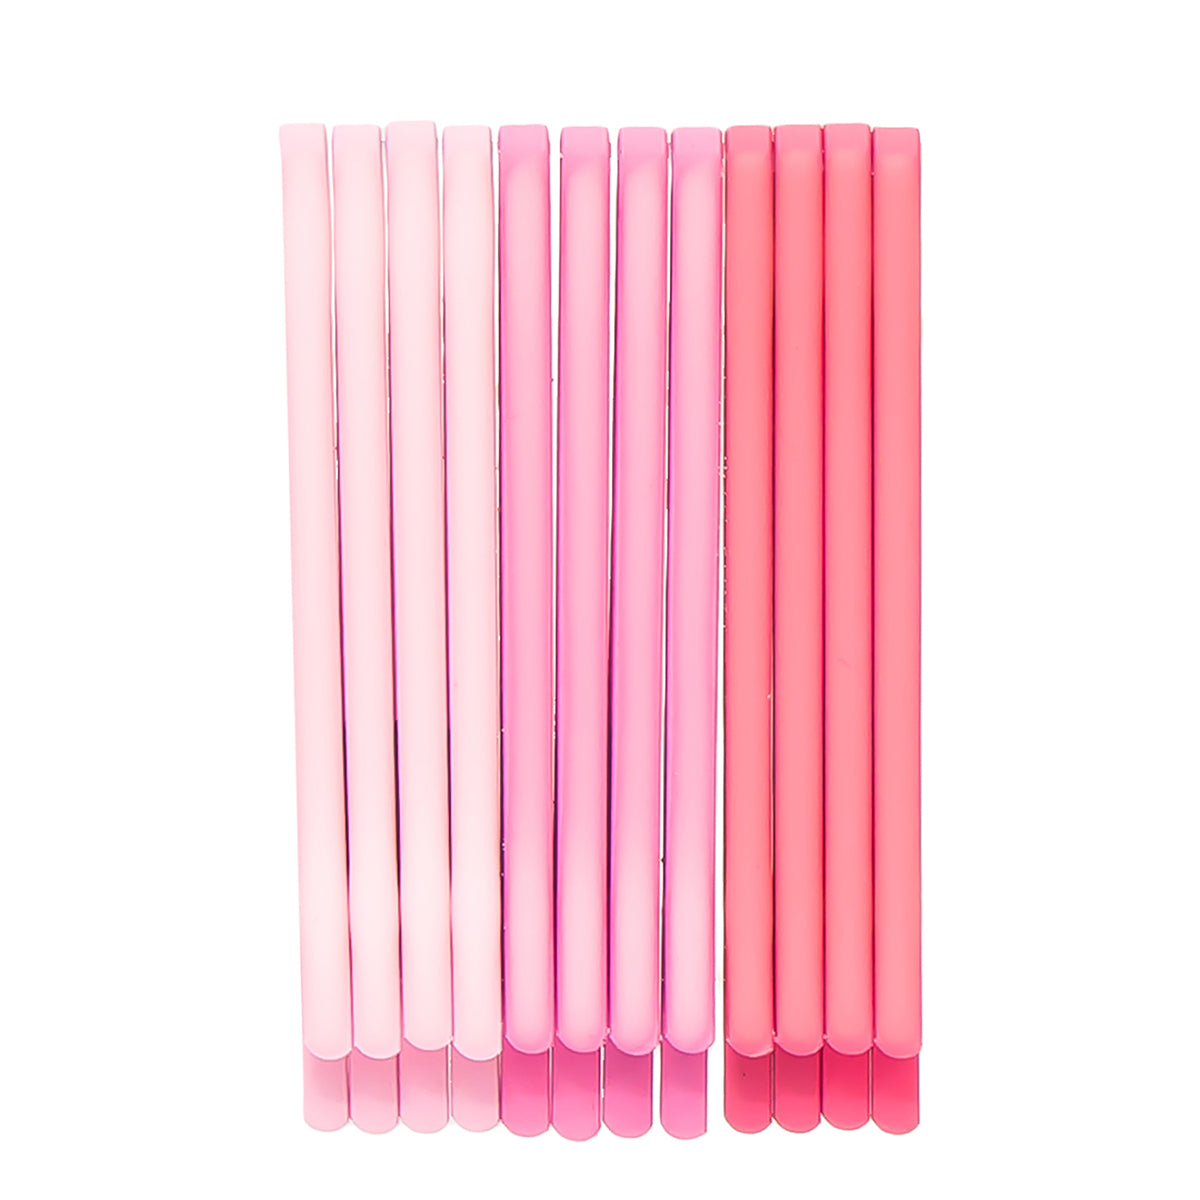 Shades Of Pink Hair Pins